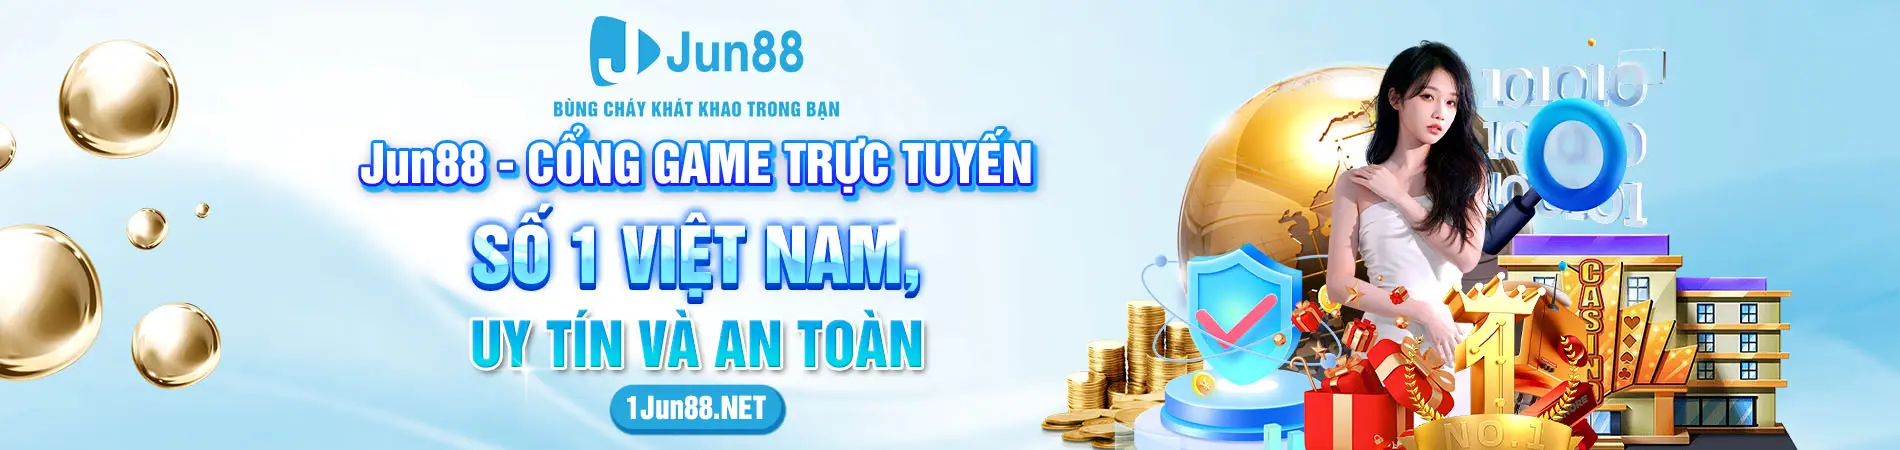 jun88-cong-game-truc-tuyen-so-1-viet-nam-uy-tin-va-an-toan